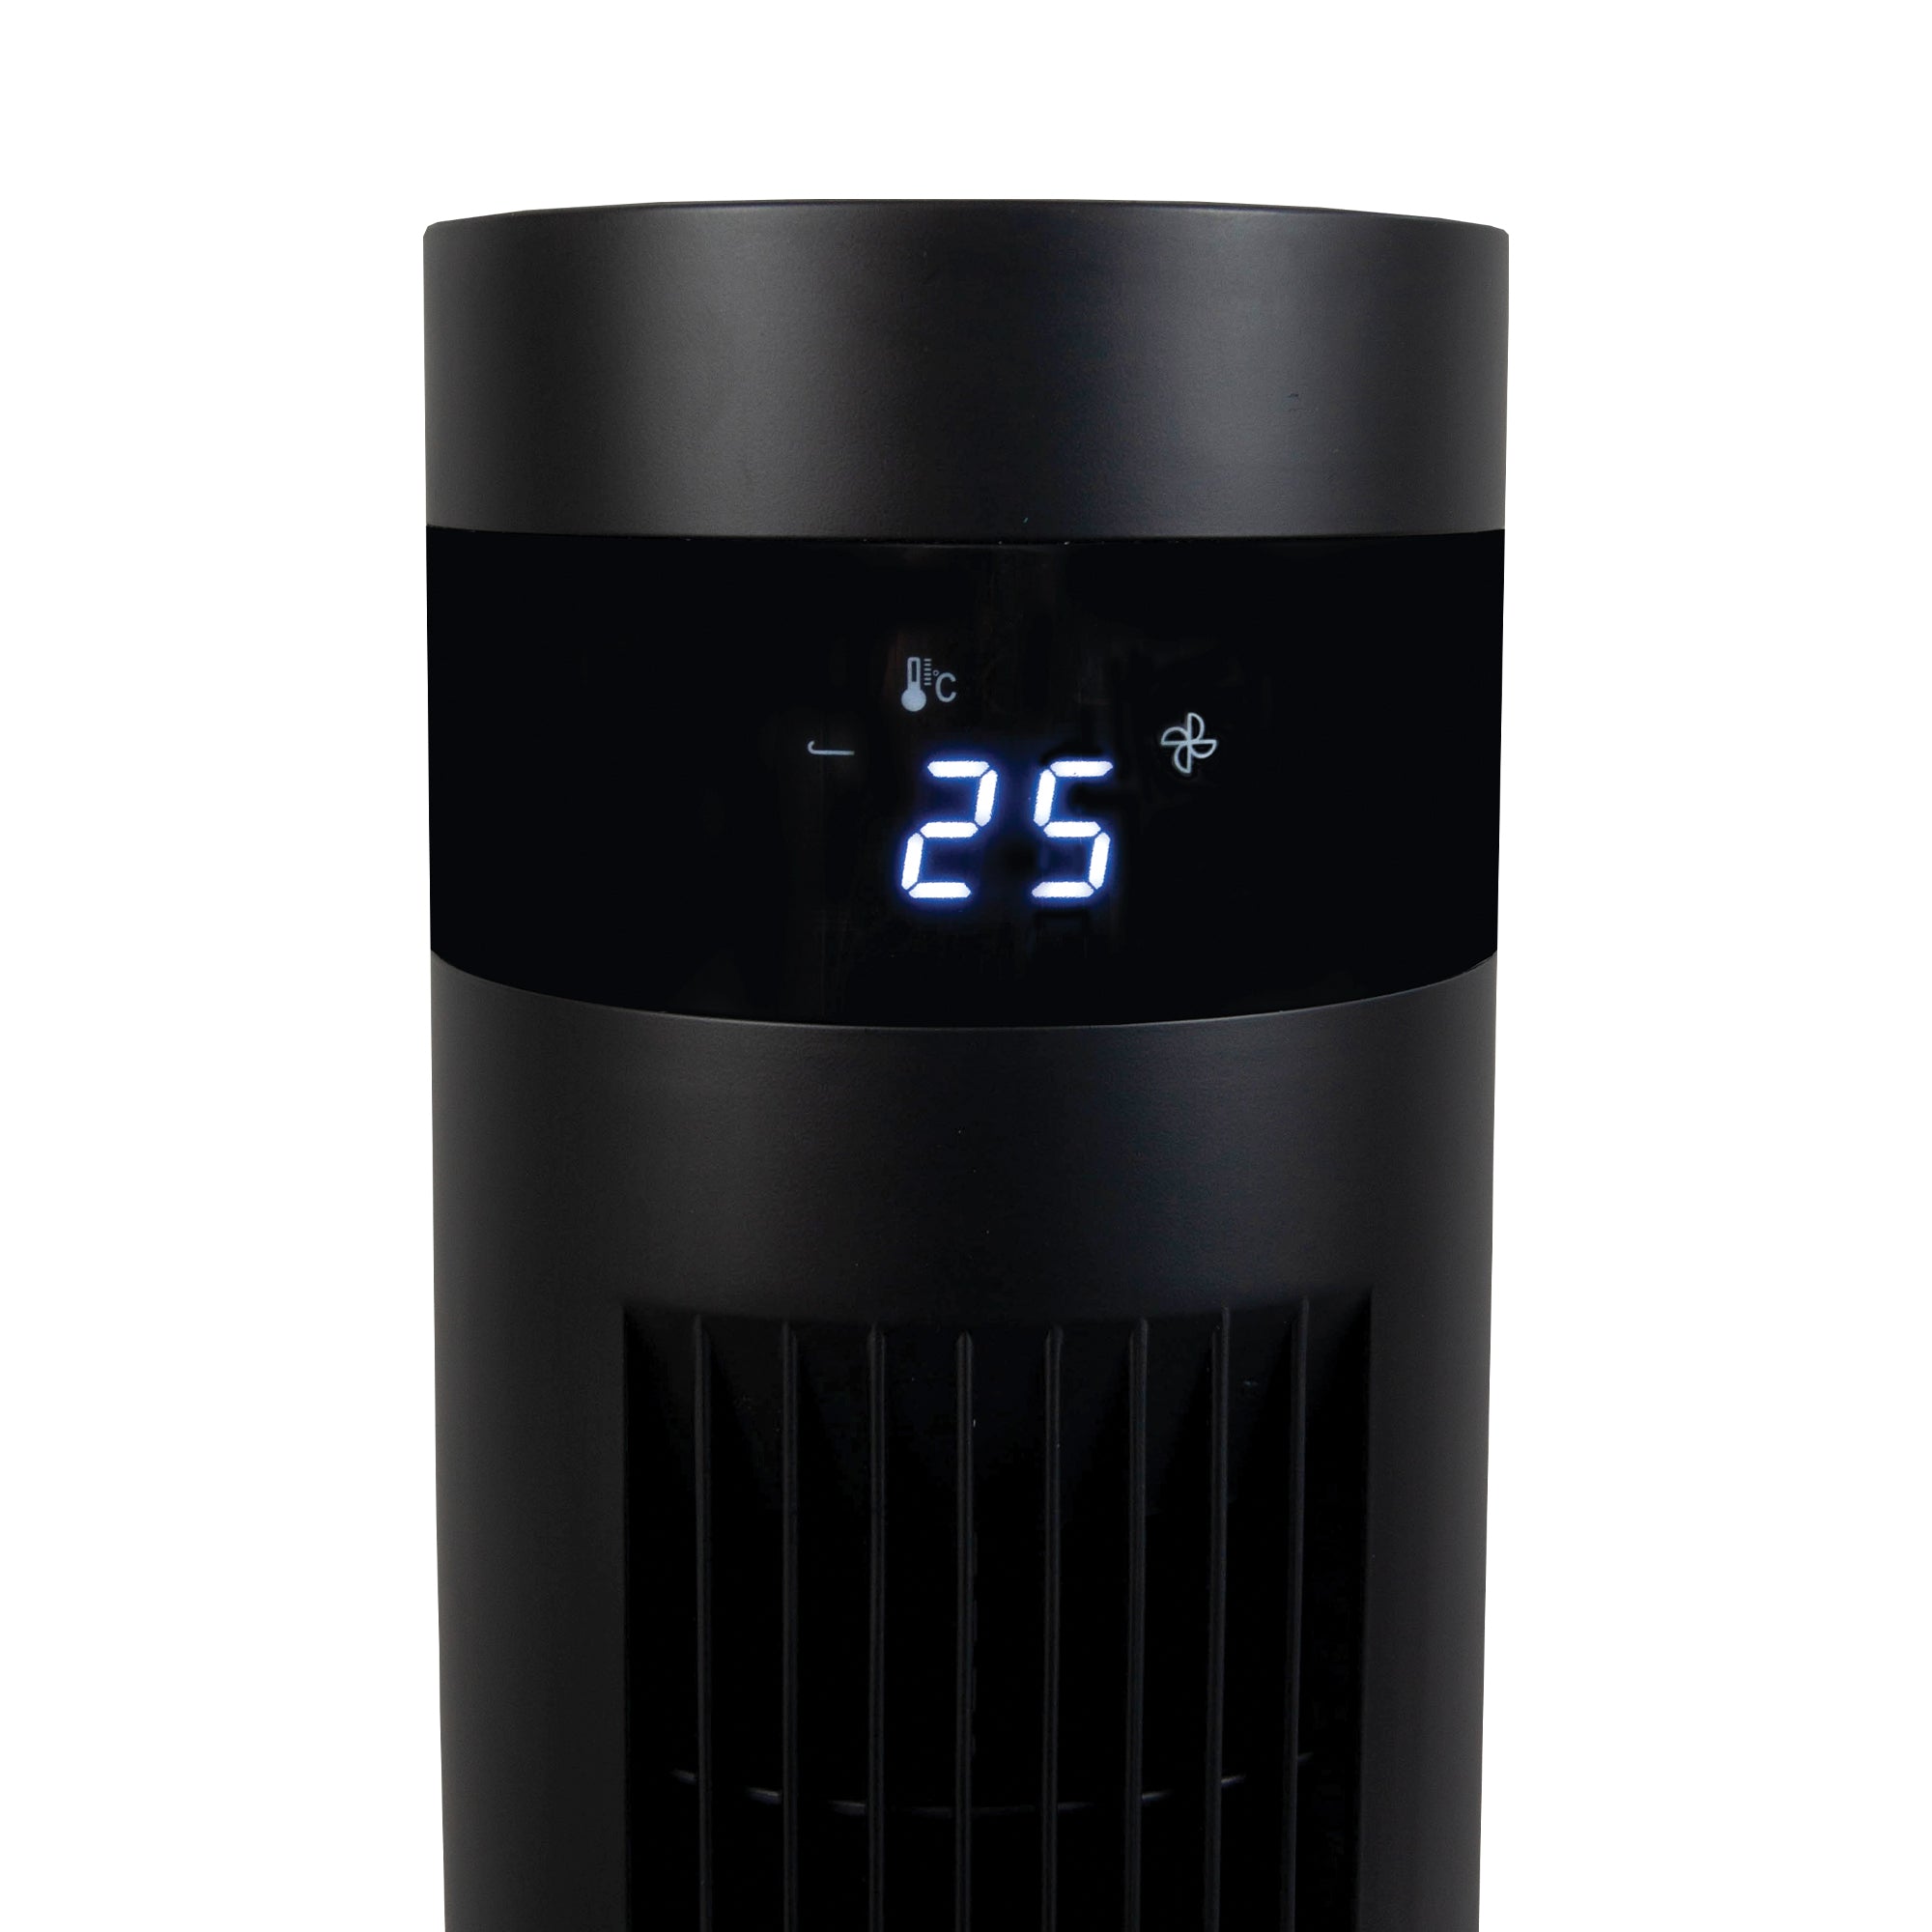 43 Inch Digital Tower Fan, 3 Speed Settings, Black